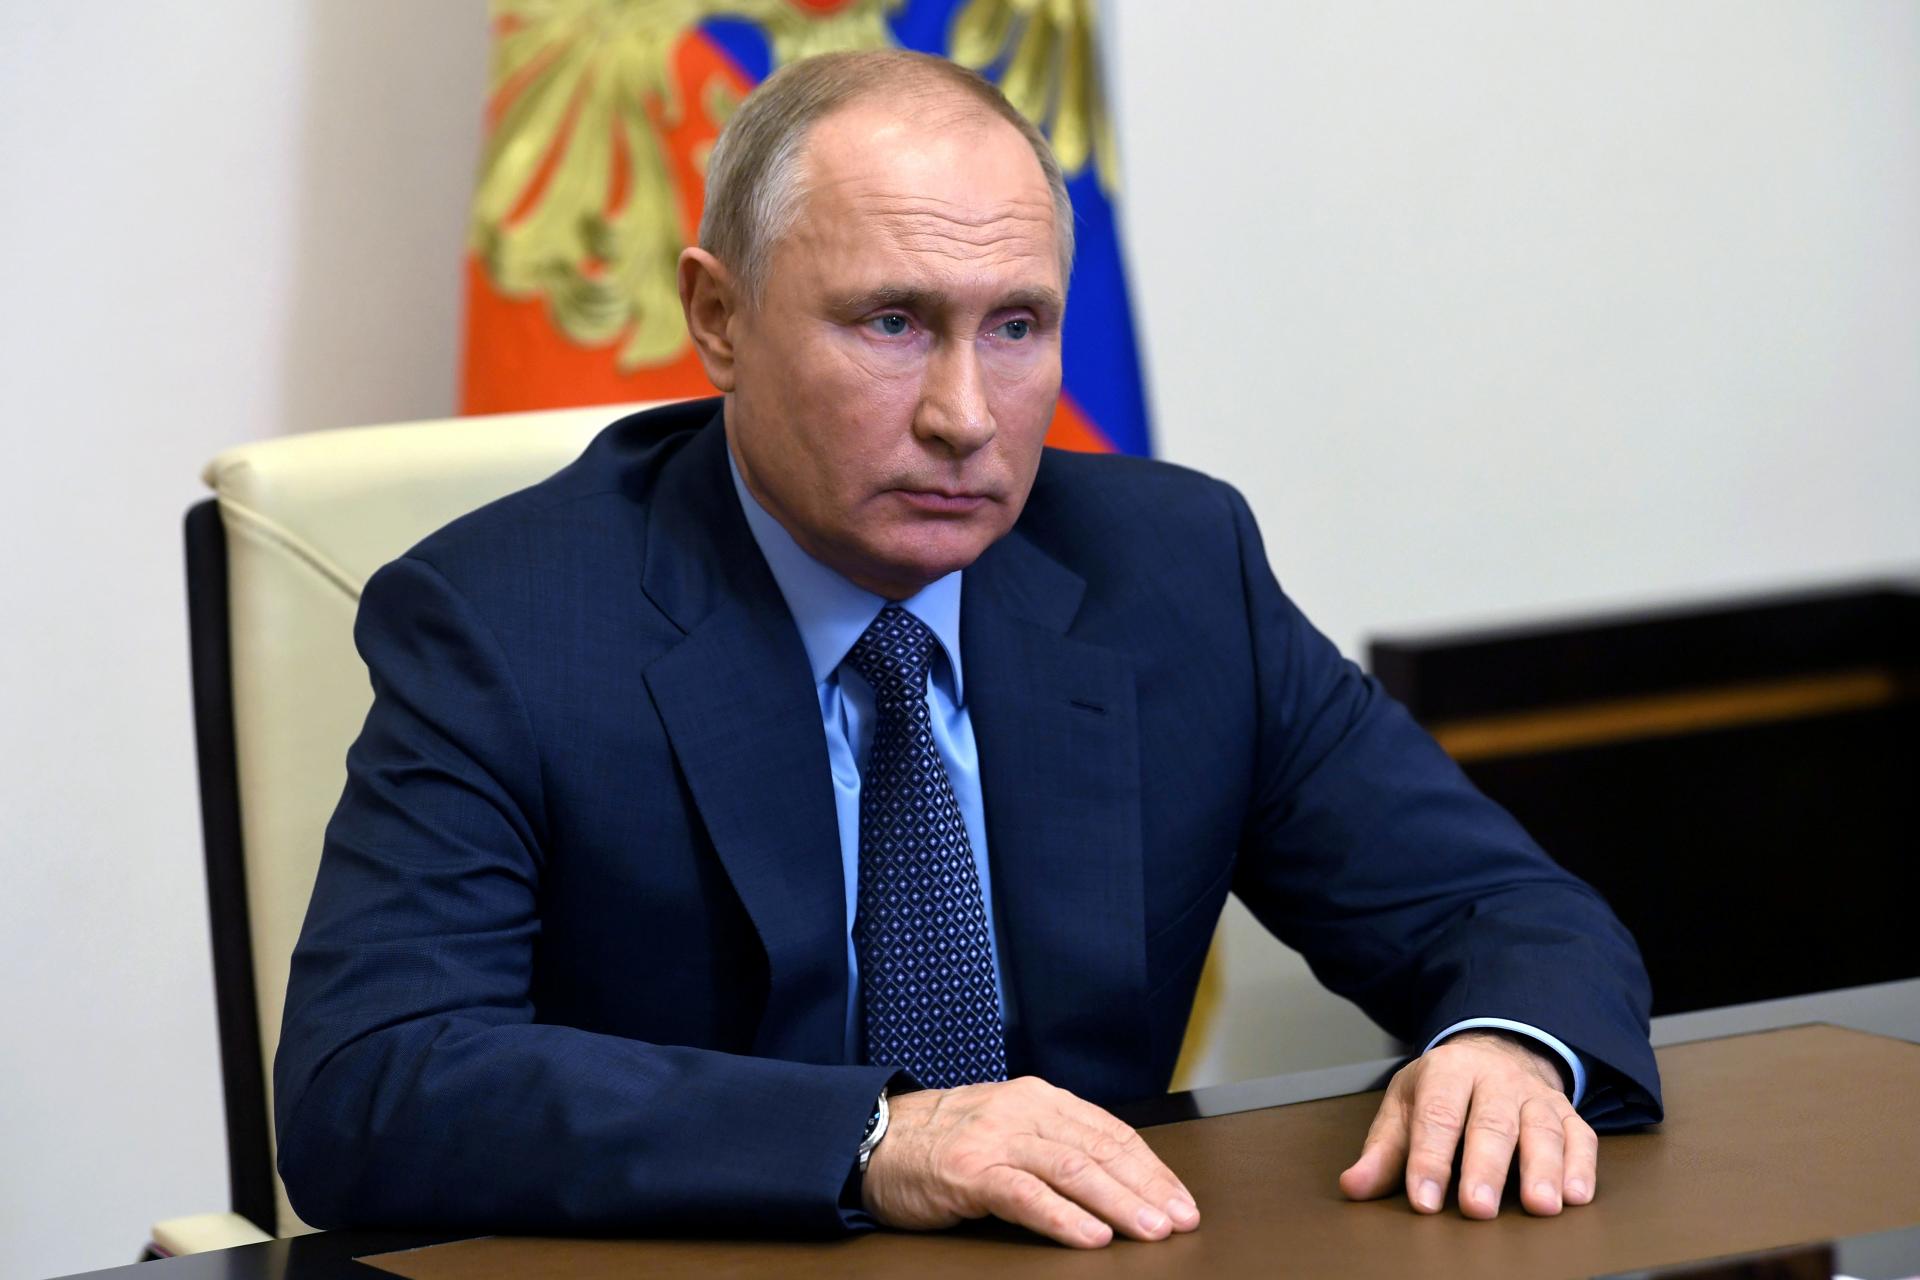 Putin primio cjepivo protiv koronavirusa ali nije dozvolio snimanje